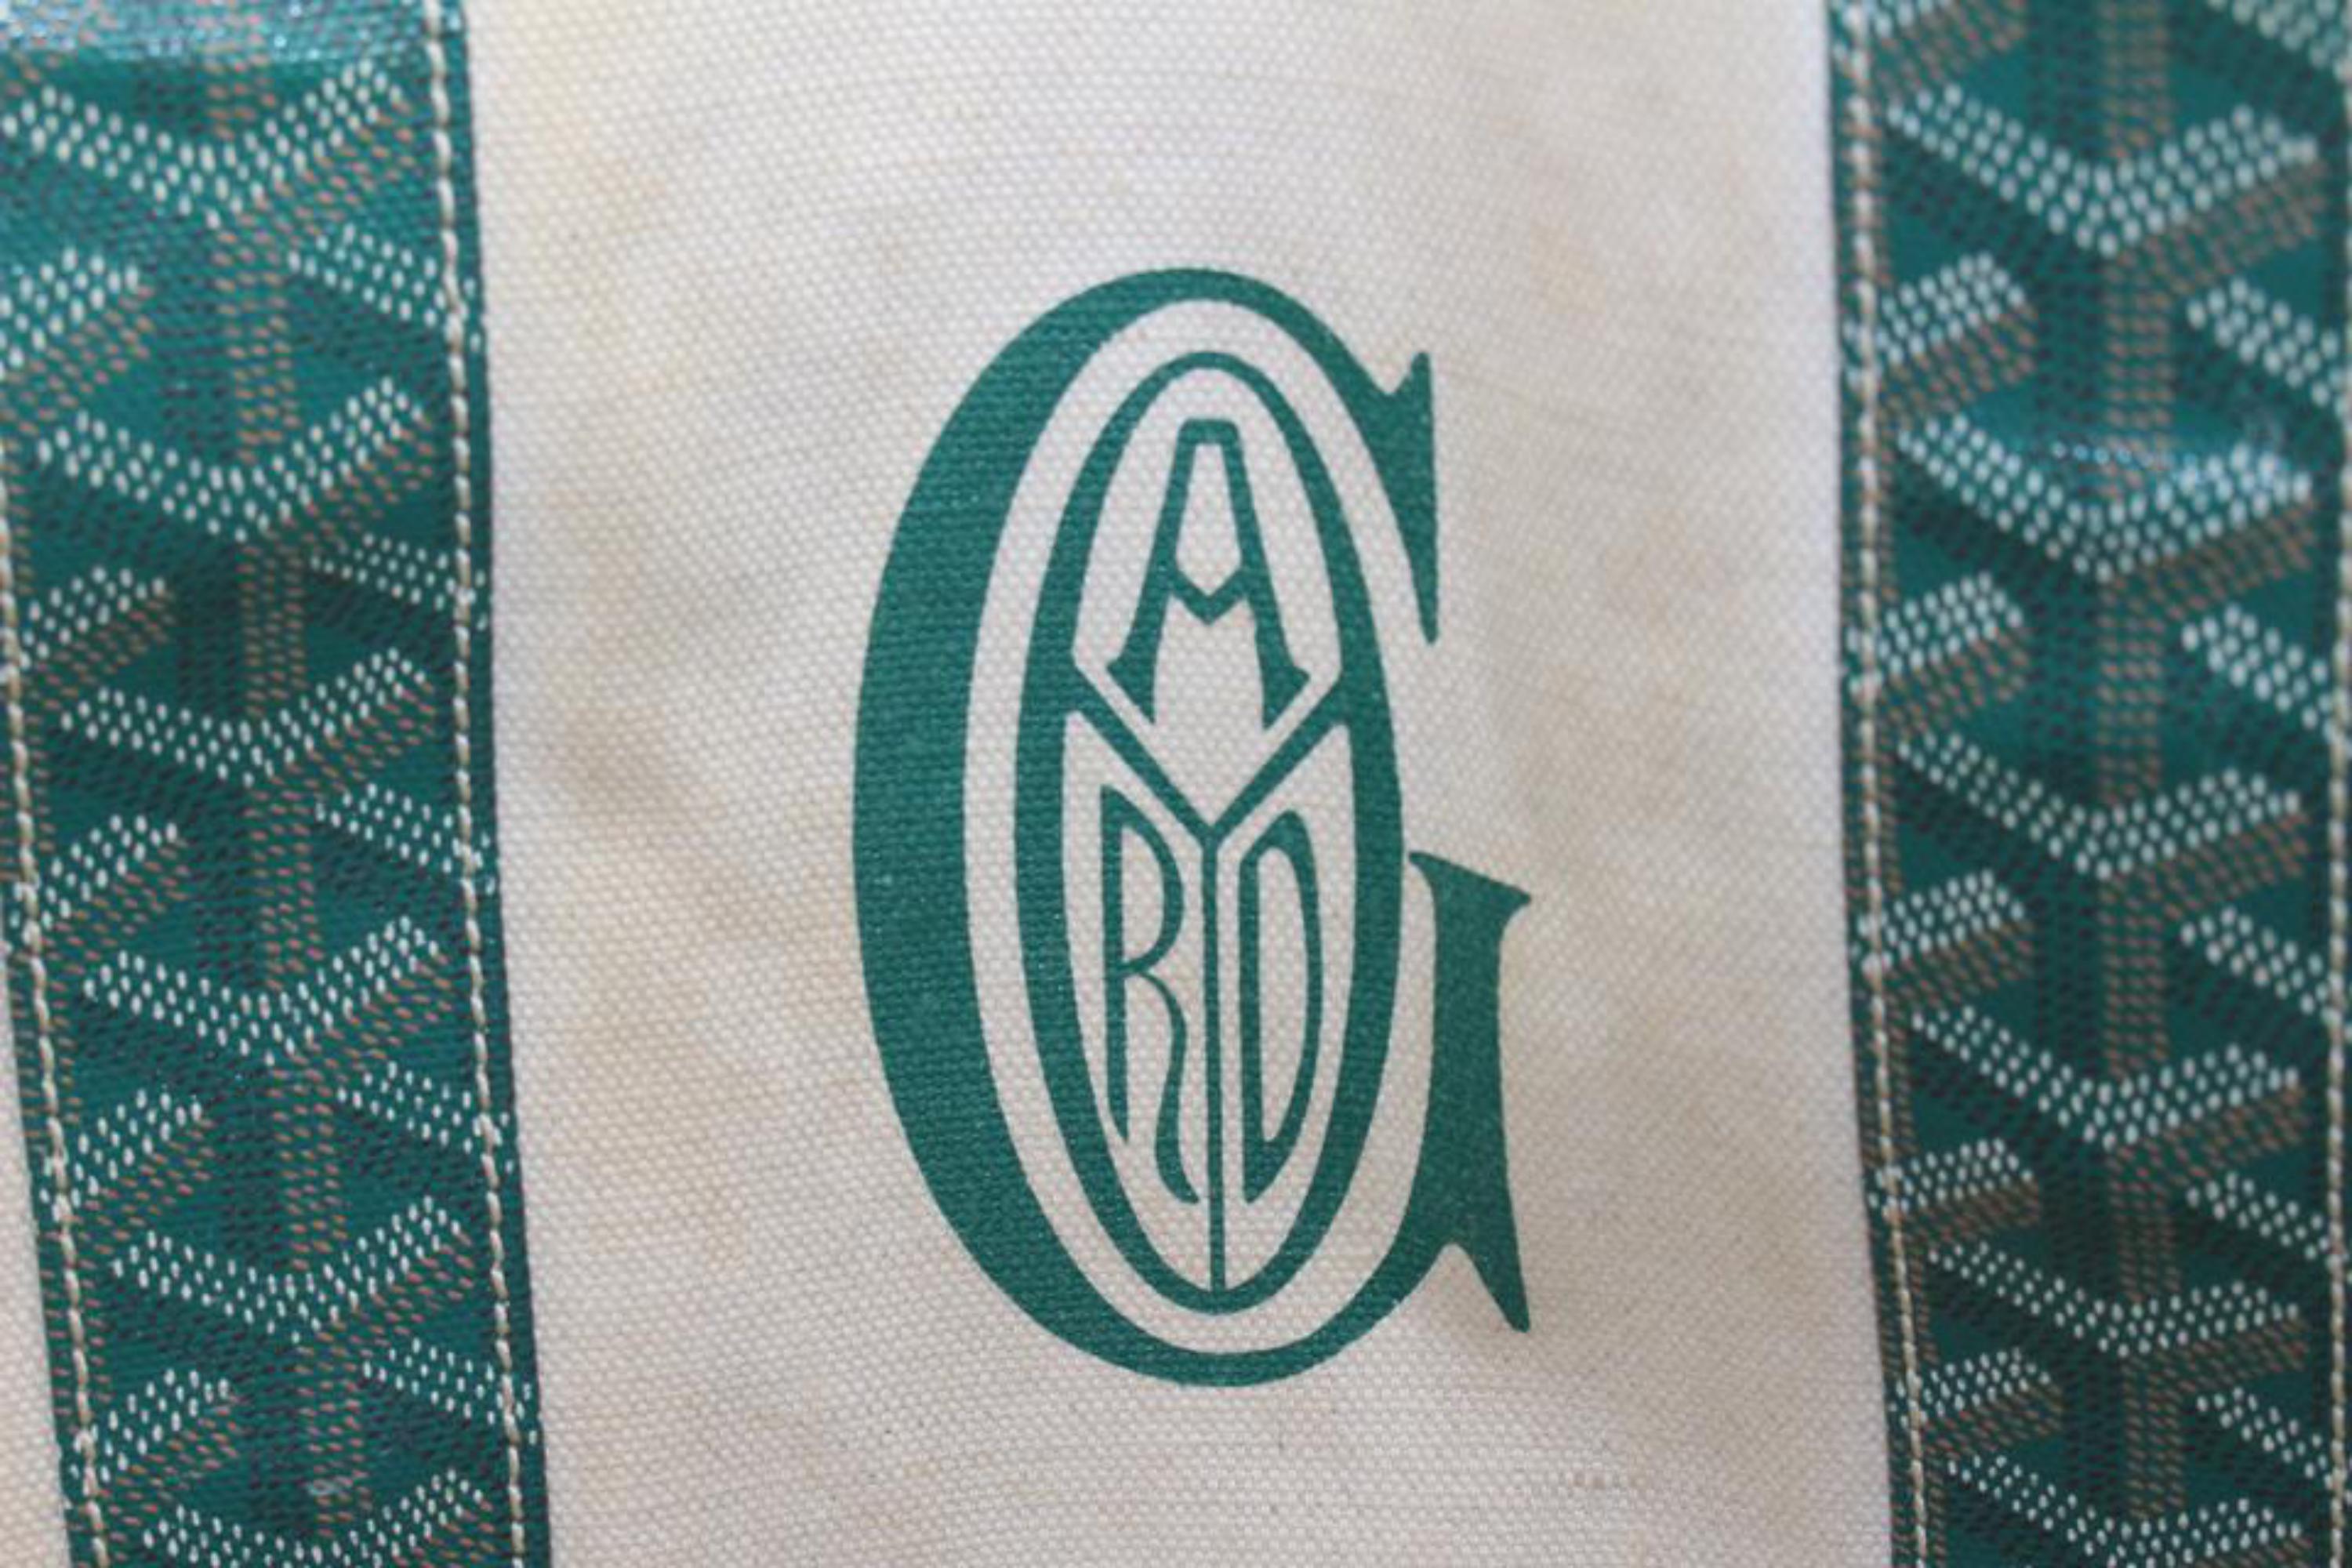 green goyard bag